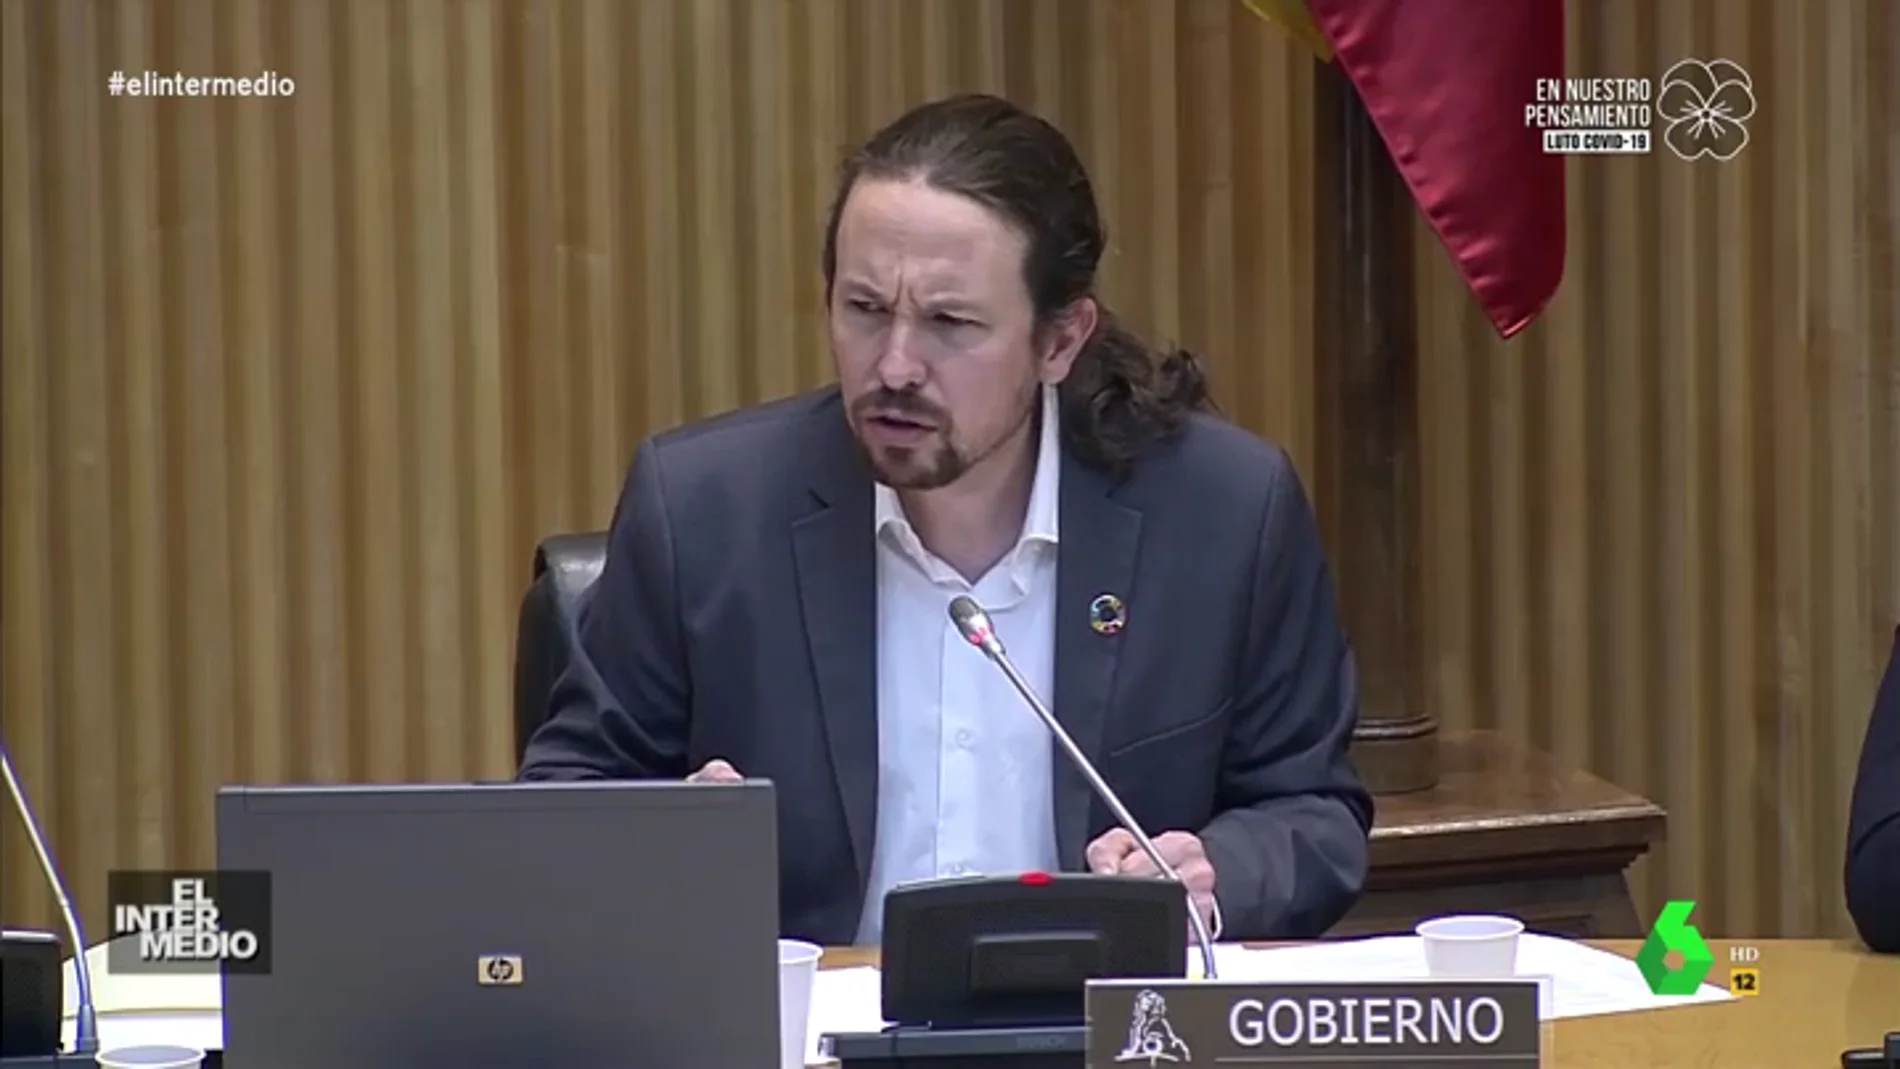 Vídeo manipulado - Lo que no se escuchó del rifirrafe entre Espinosa e Iglesias en la comisión